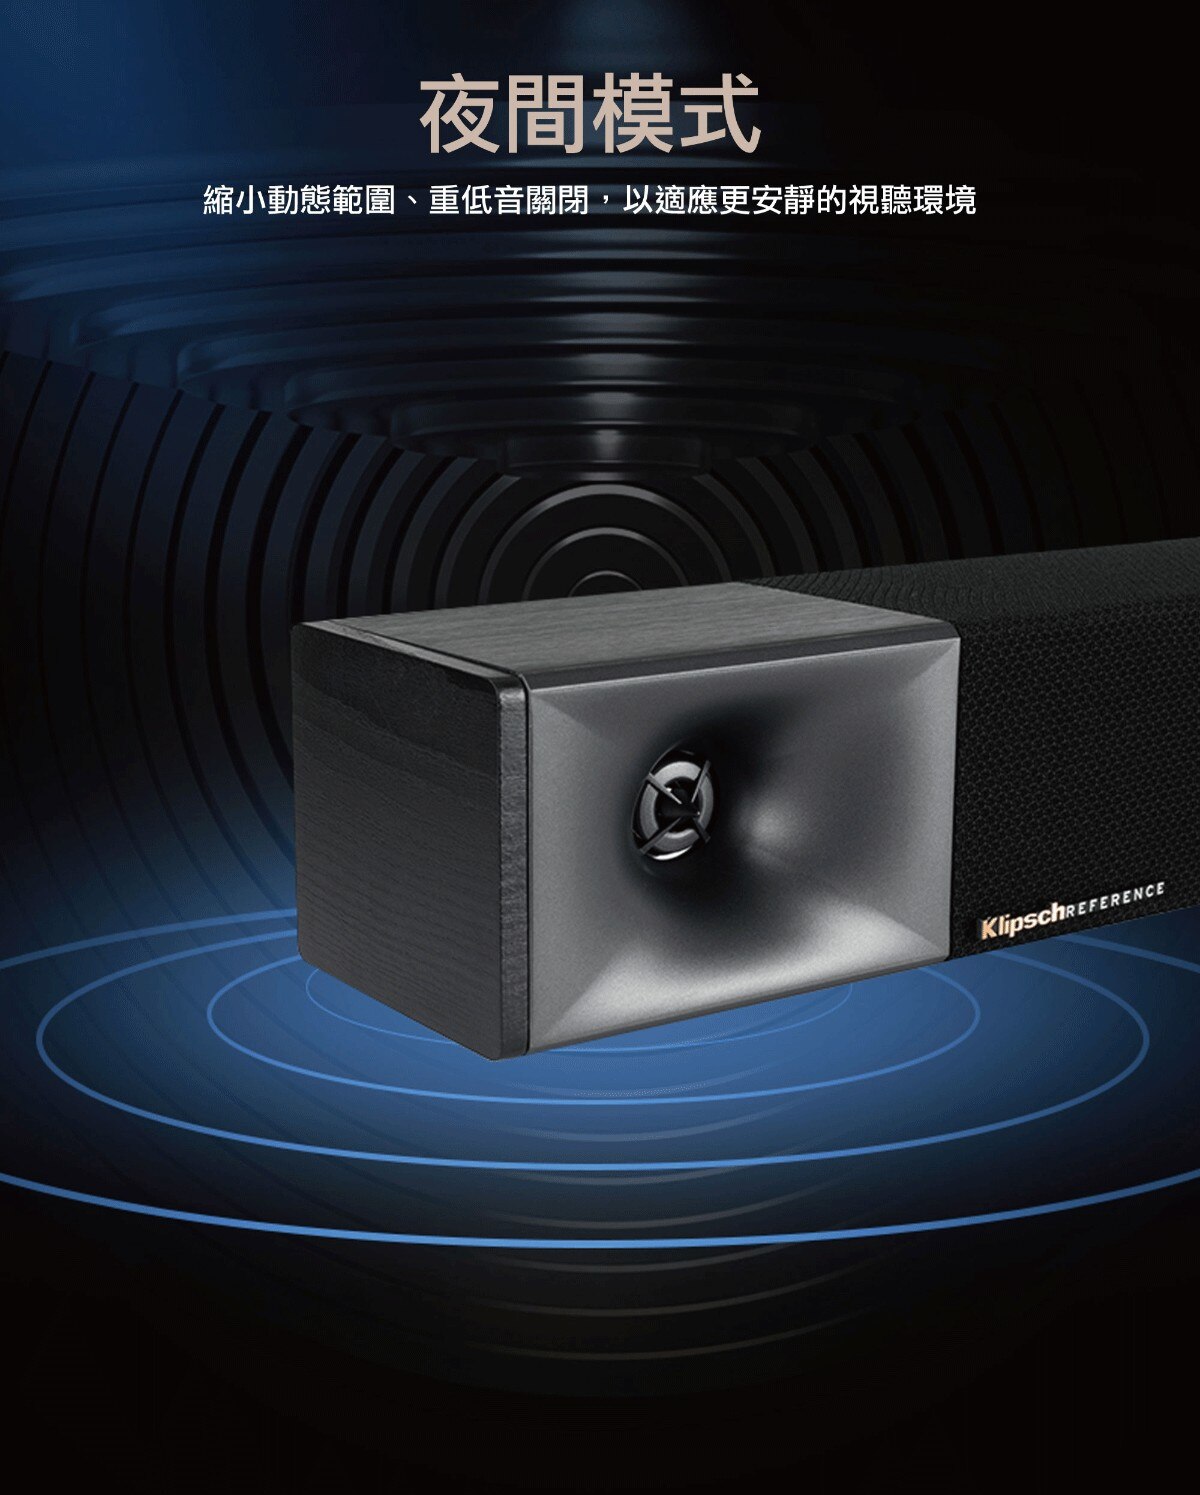 Klipsch 3.1聲道微型劇院組 Soundbar Cinema 600，內建中央聲道，搭配10吋無線重低音，支援HDMI-ARC、光纖、AUX、藍牙5.0，提供清晰人聲、動態音軌，實現音效的增強。